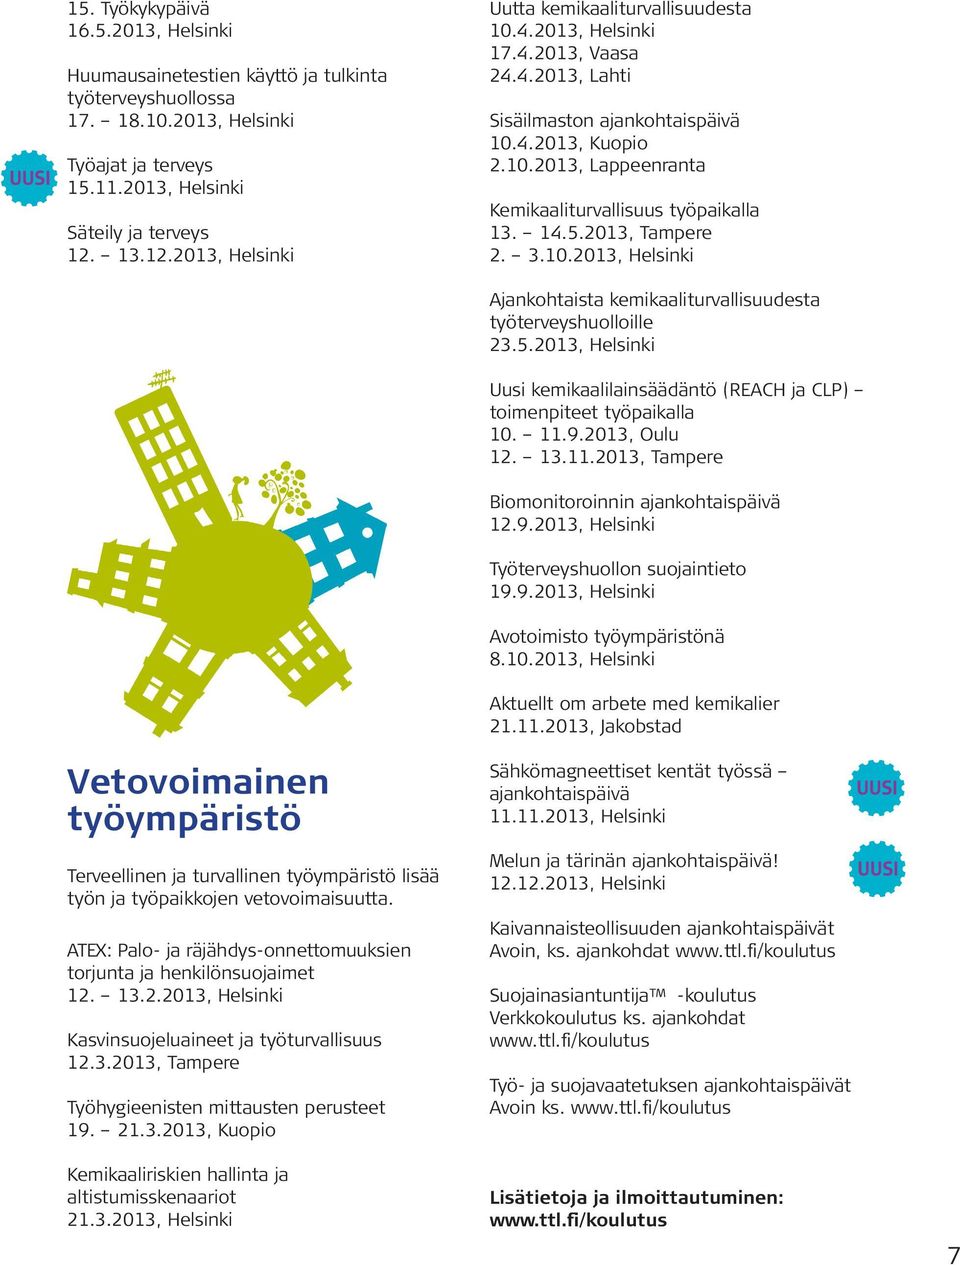 14.5.2013, Tampere 2. 3.10.2013, Helsinki Ajankohtaista kemikaaliturvallisuudesta työterveyshuolloille 23.5.2013, Helsinki Uusi kemikaalilainsäädäntö (REACH ja CLP) toimenpiteet työpaikalla 10. 11.9.